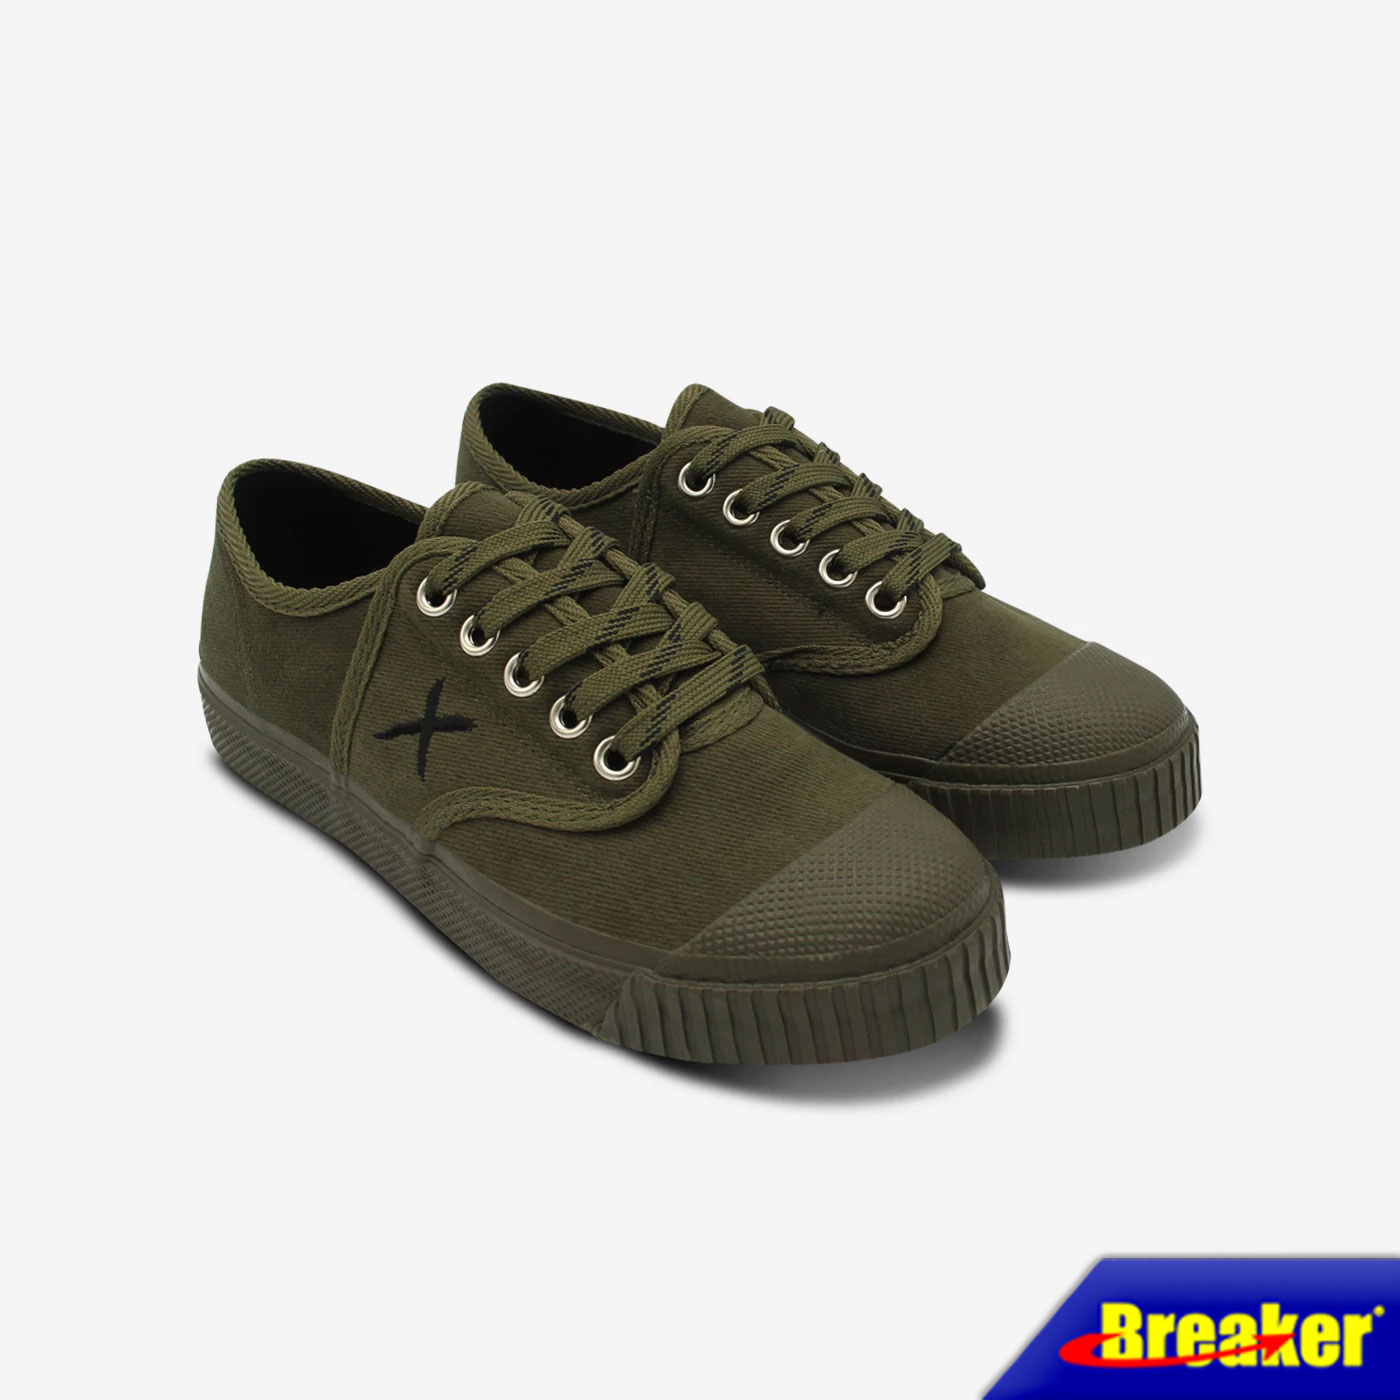 Breaker - X   รองเท้าแฟชั่นผู้ชาย รองเท้าผู้ชาย รองเท้าผ้าใบเบรกเกอร์ (BK-X1) สี Forest Green ใส่ทำงาน ใส่ออกกำลังกายได้สบายเท้า